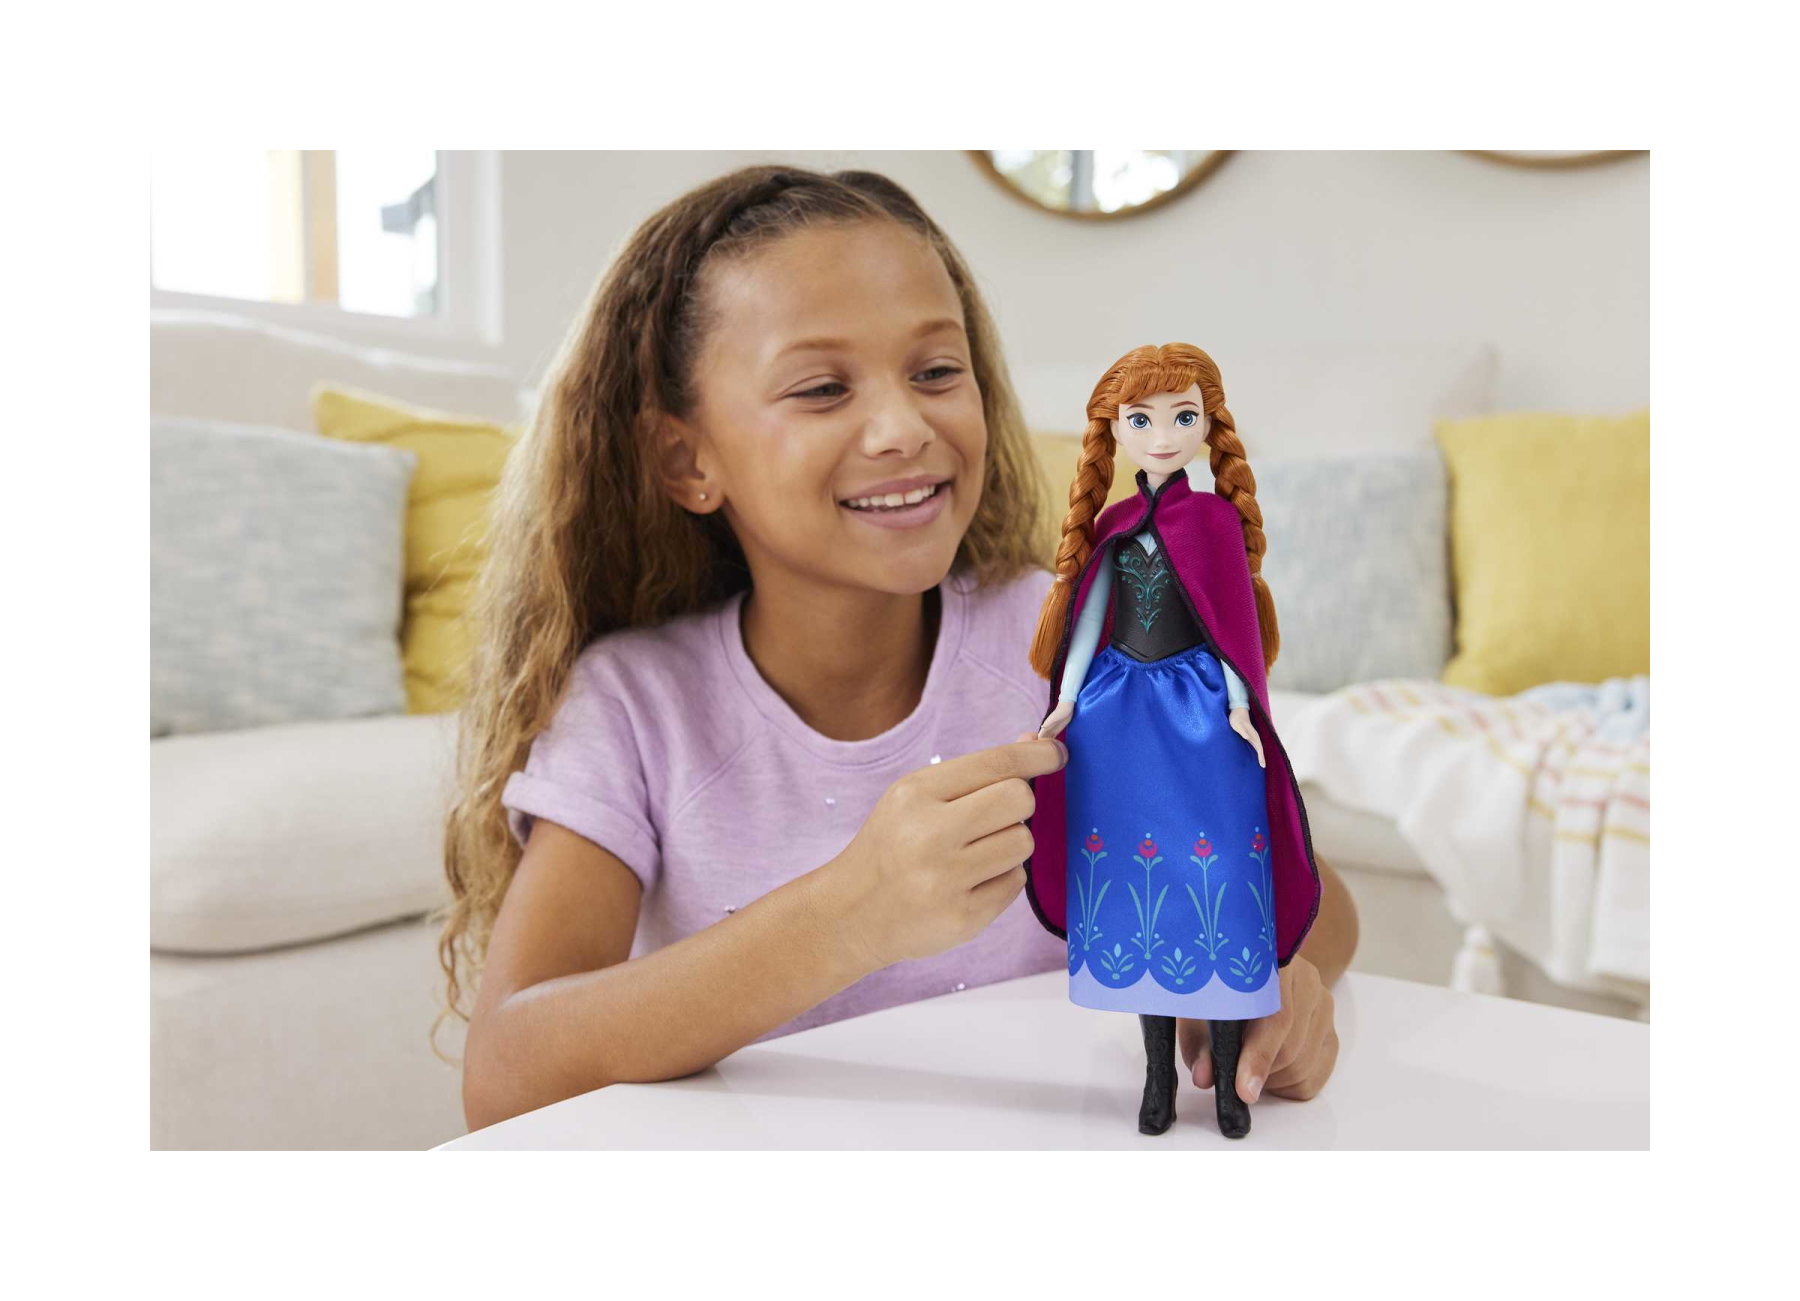 Disney frozen - anna, bambola con abito elegante e accessori ispirati al film dsney frozen 1, giocattolo per bambini, 3+ anni, hlw49 - DISNEY PRINCESS, Frozen